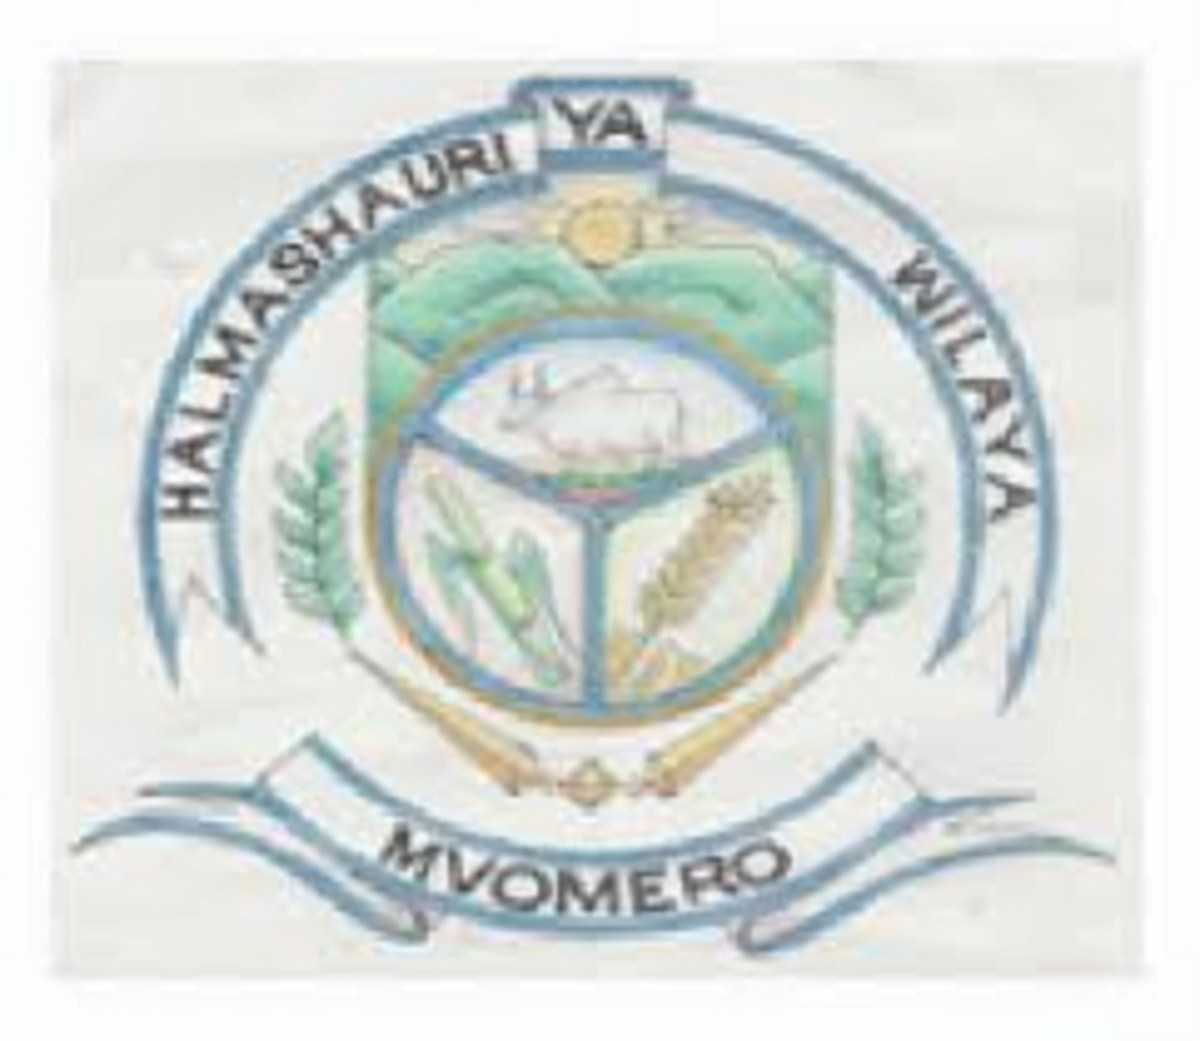 687 Part Time Jobs Opportunities at Mvomero District Council (Tanzania) 2022, Mvomero District Council (DC) jobs, Nafasi za kazi Halmashauri ya wilaya ya Mvomero